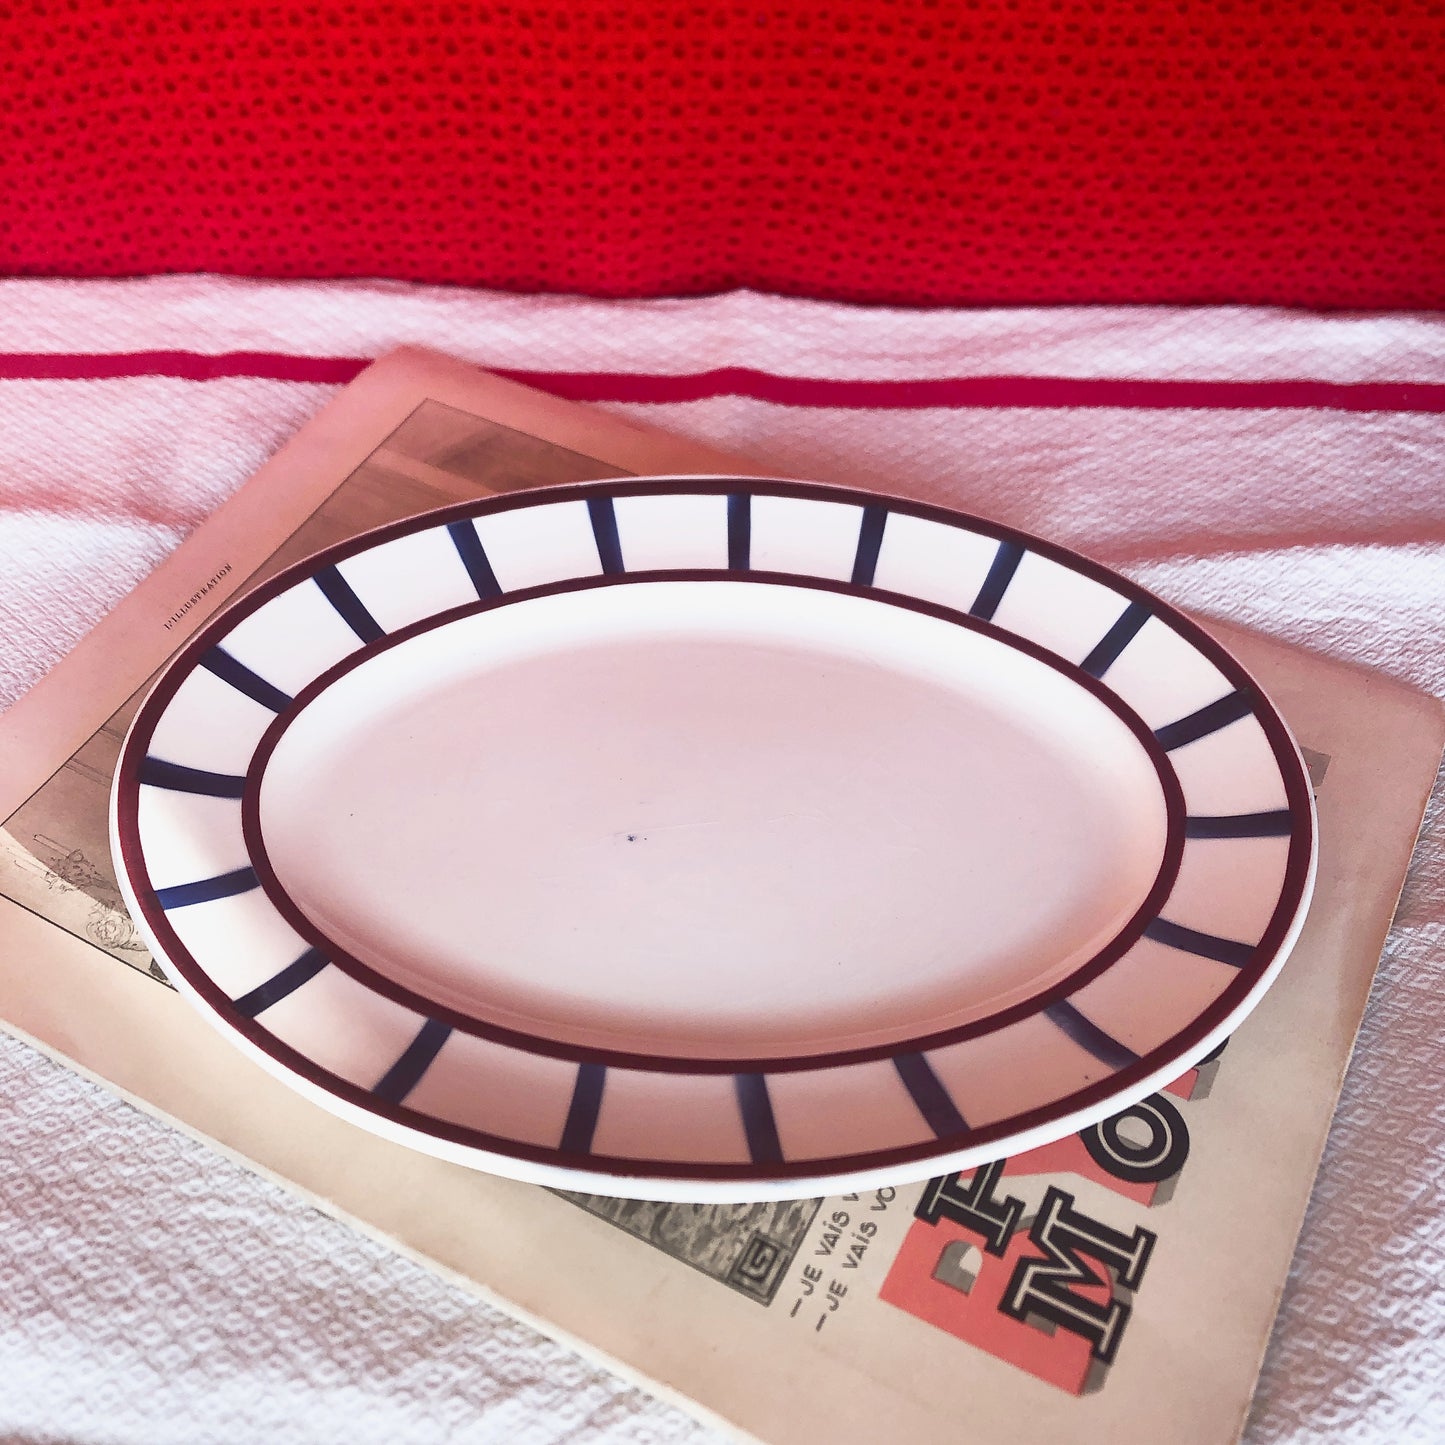 ご予約❤️クレイユモントロー HBCM Béarn バスク柄 オーバル皿 楕円形大皿「ボルドー・ダークブルー」フランスアンティーク・食器・皿・プレート ブロカント